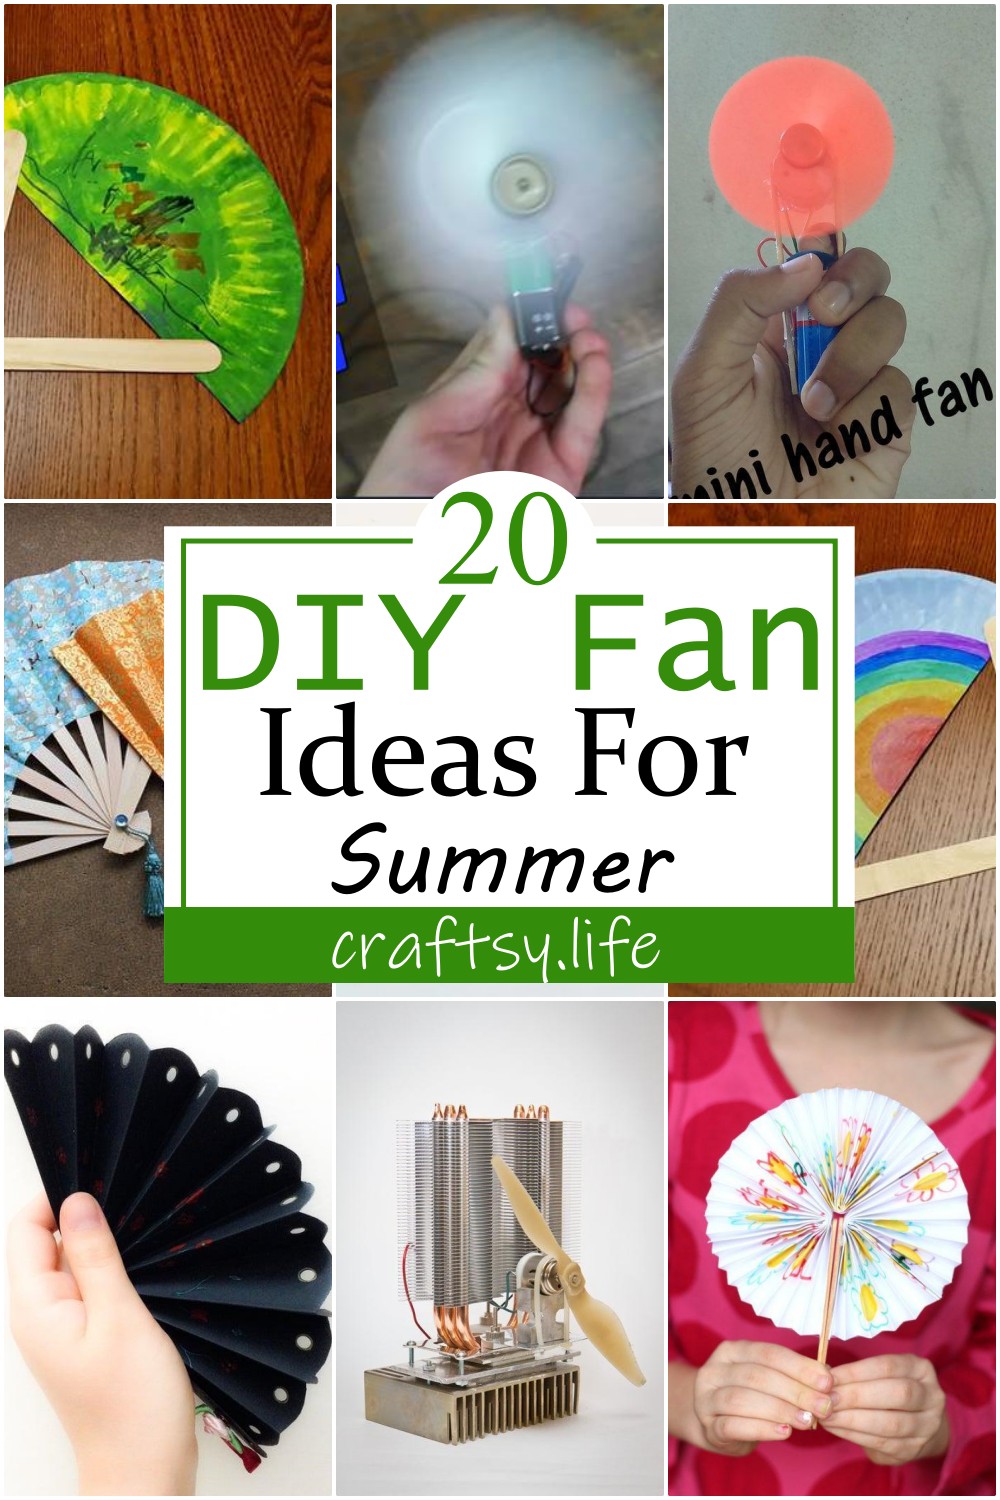 20 DIY Fan Ideas For Summer